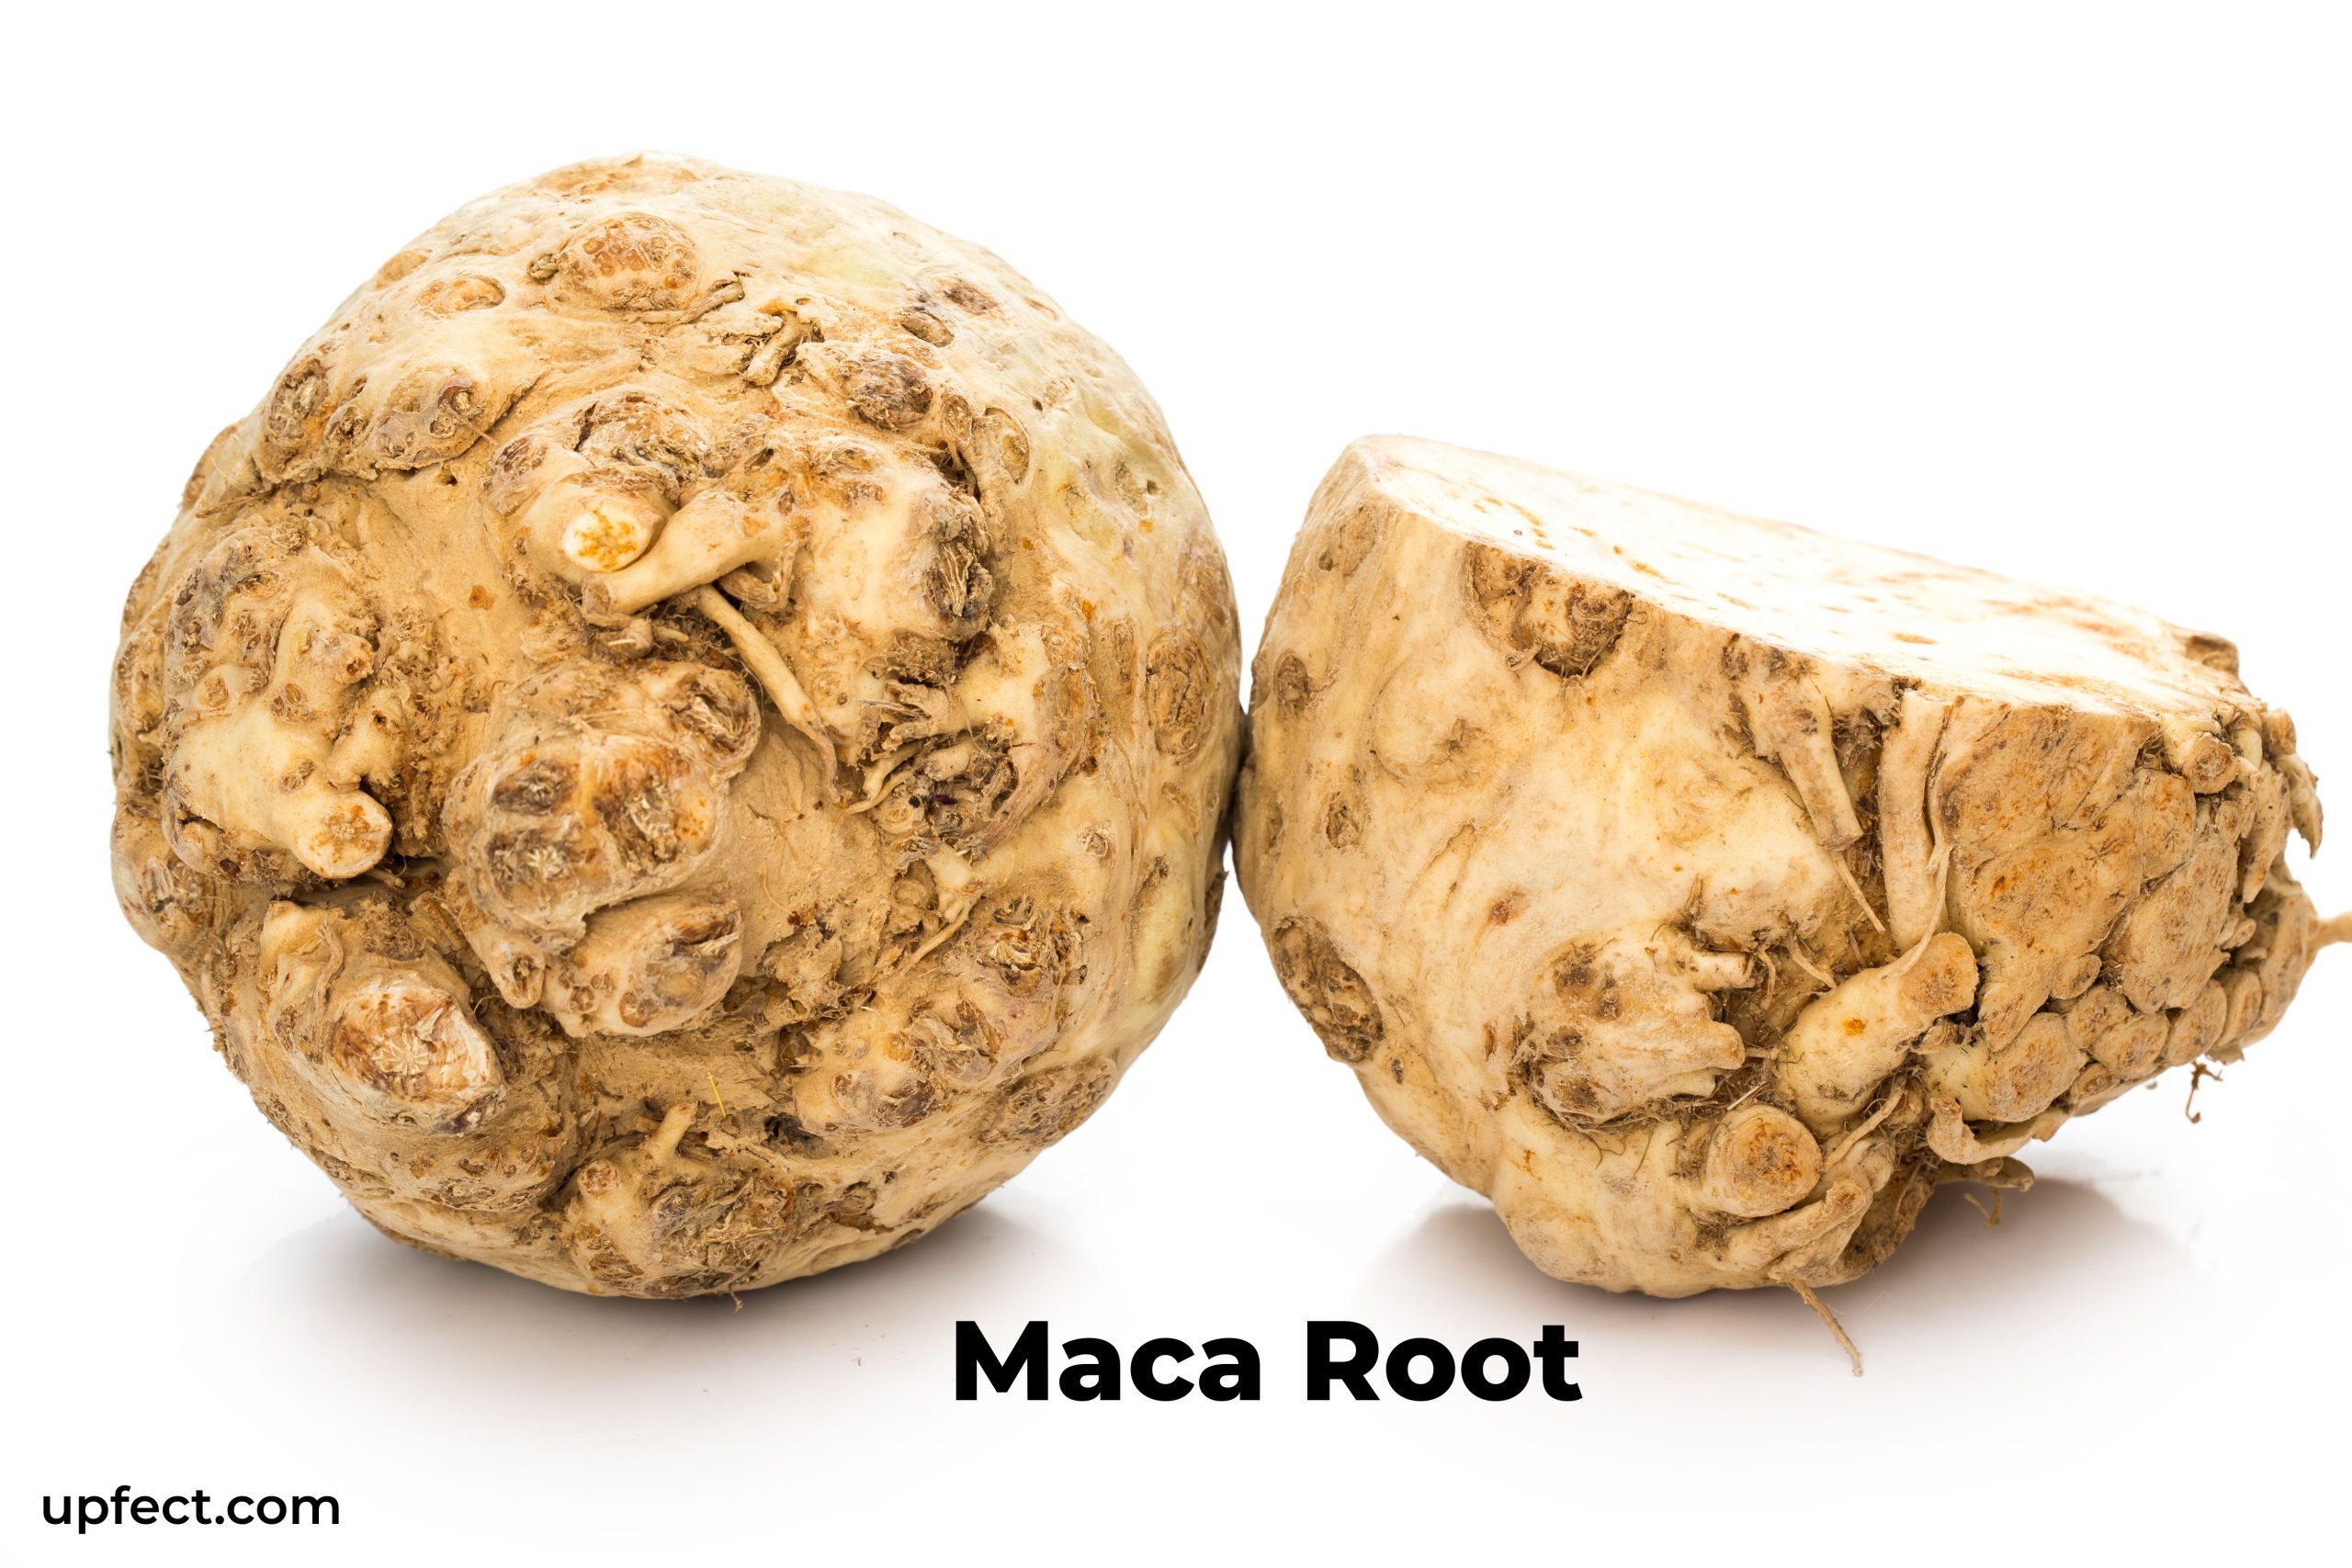 Maca root is best food for Sperm